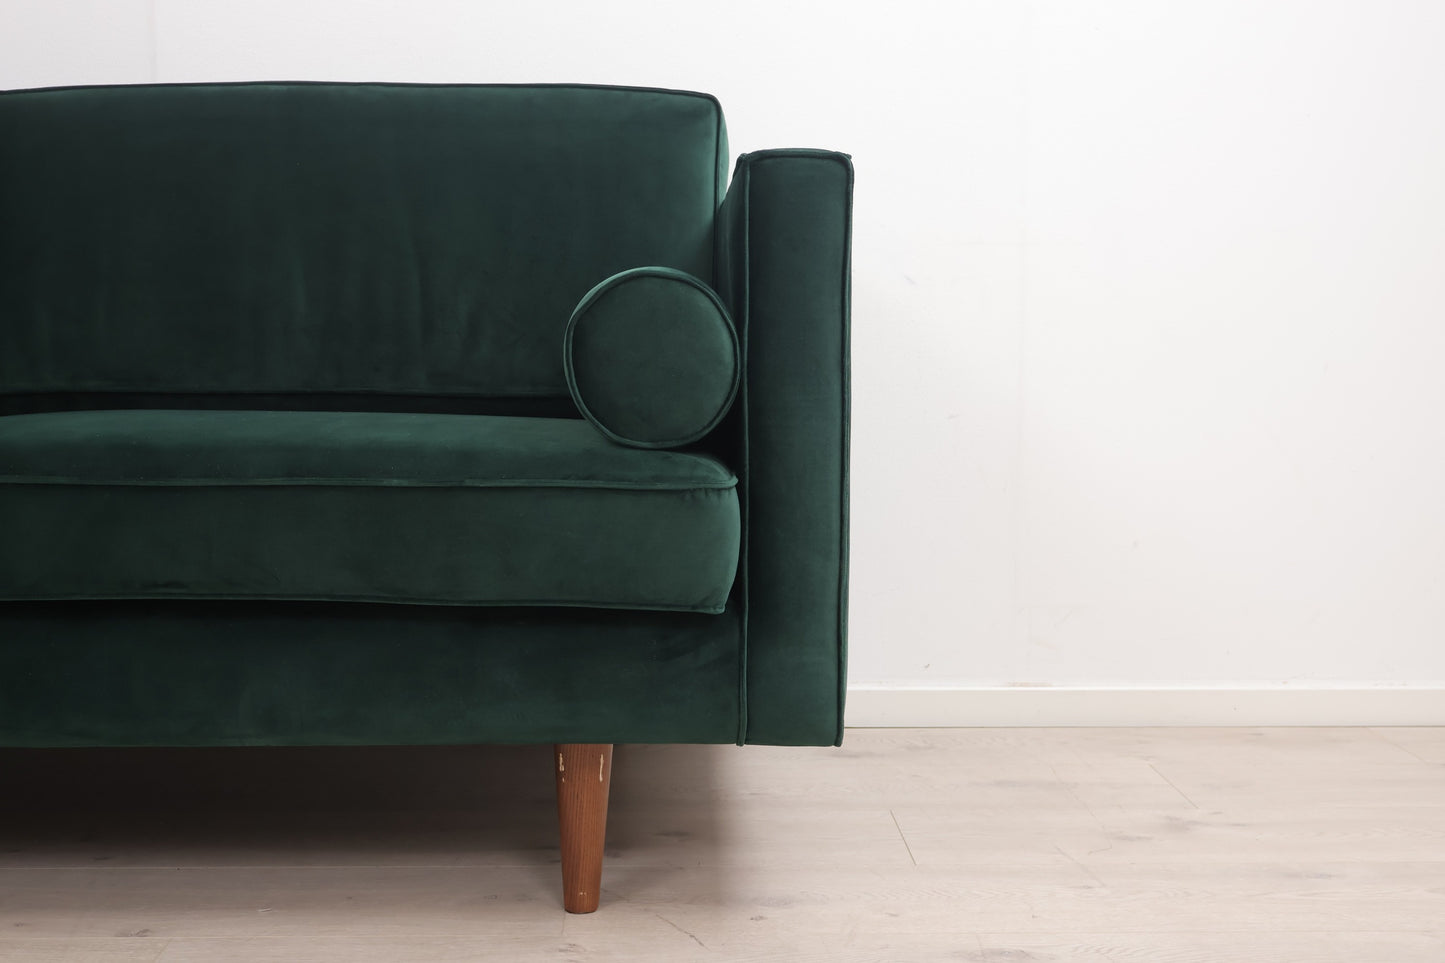 Nyrenset | Mørk grønn Harper 3-seter sofa i velur fra Sofacompany